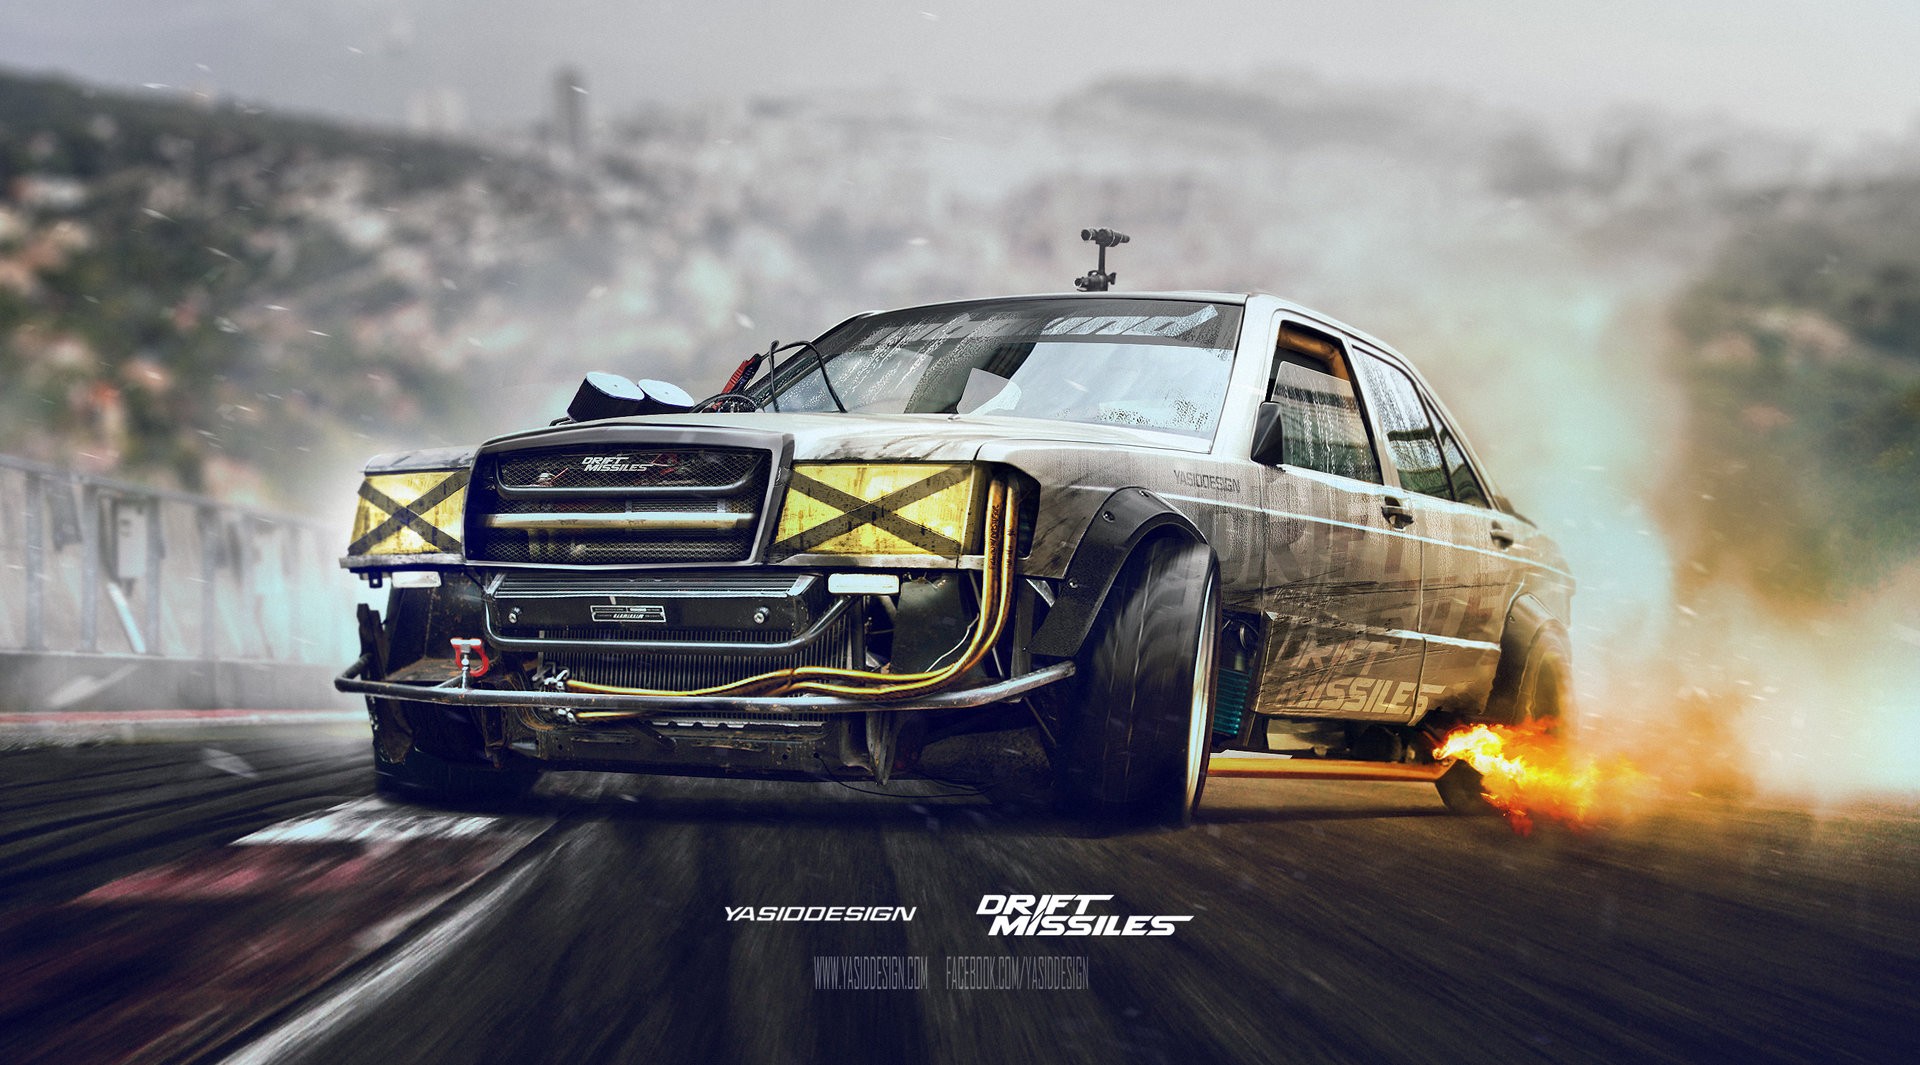 Mercedes Benz, Drift, Car, Adobe Photoshop, Drift Missile Wallpaper